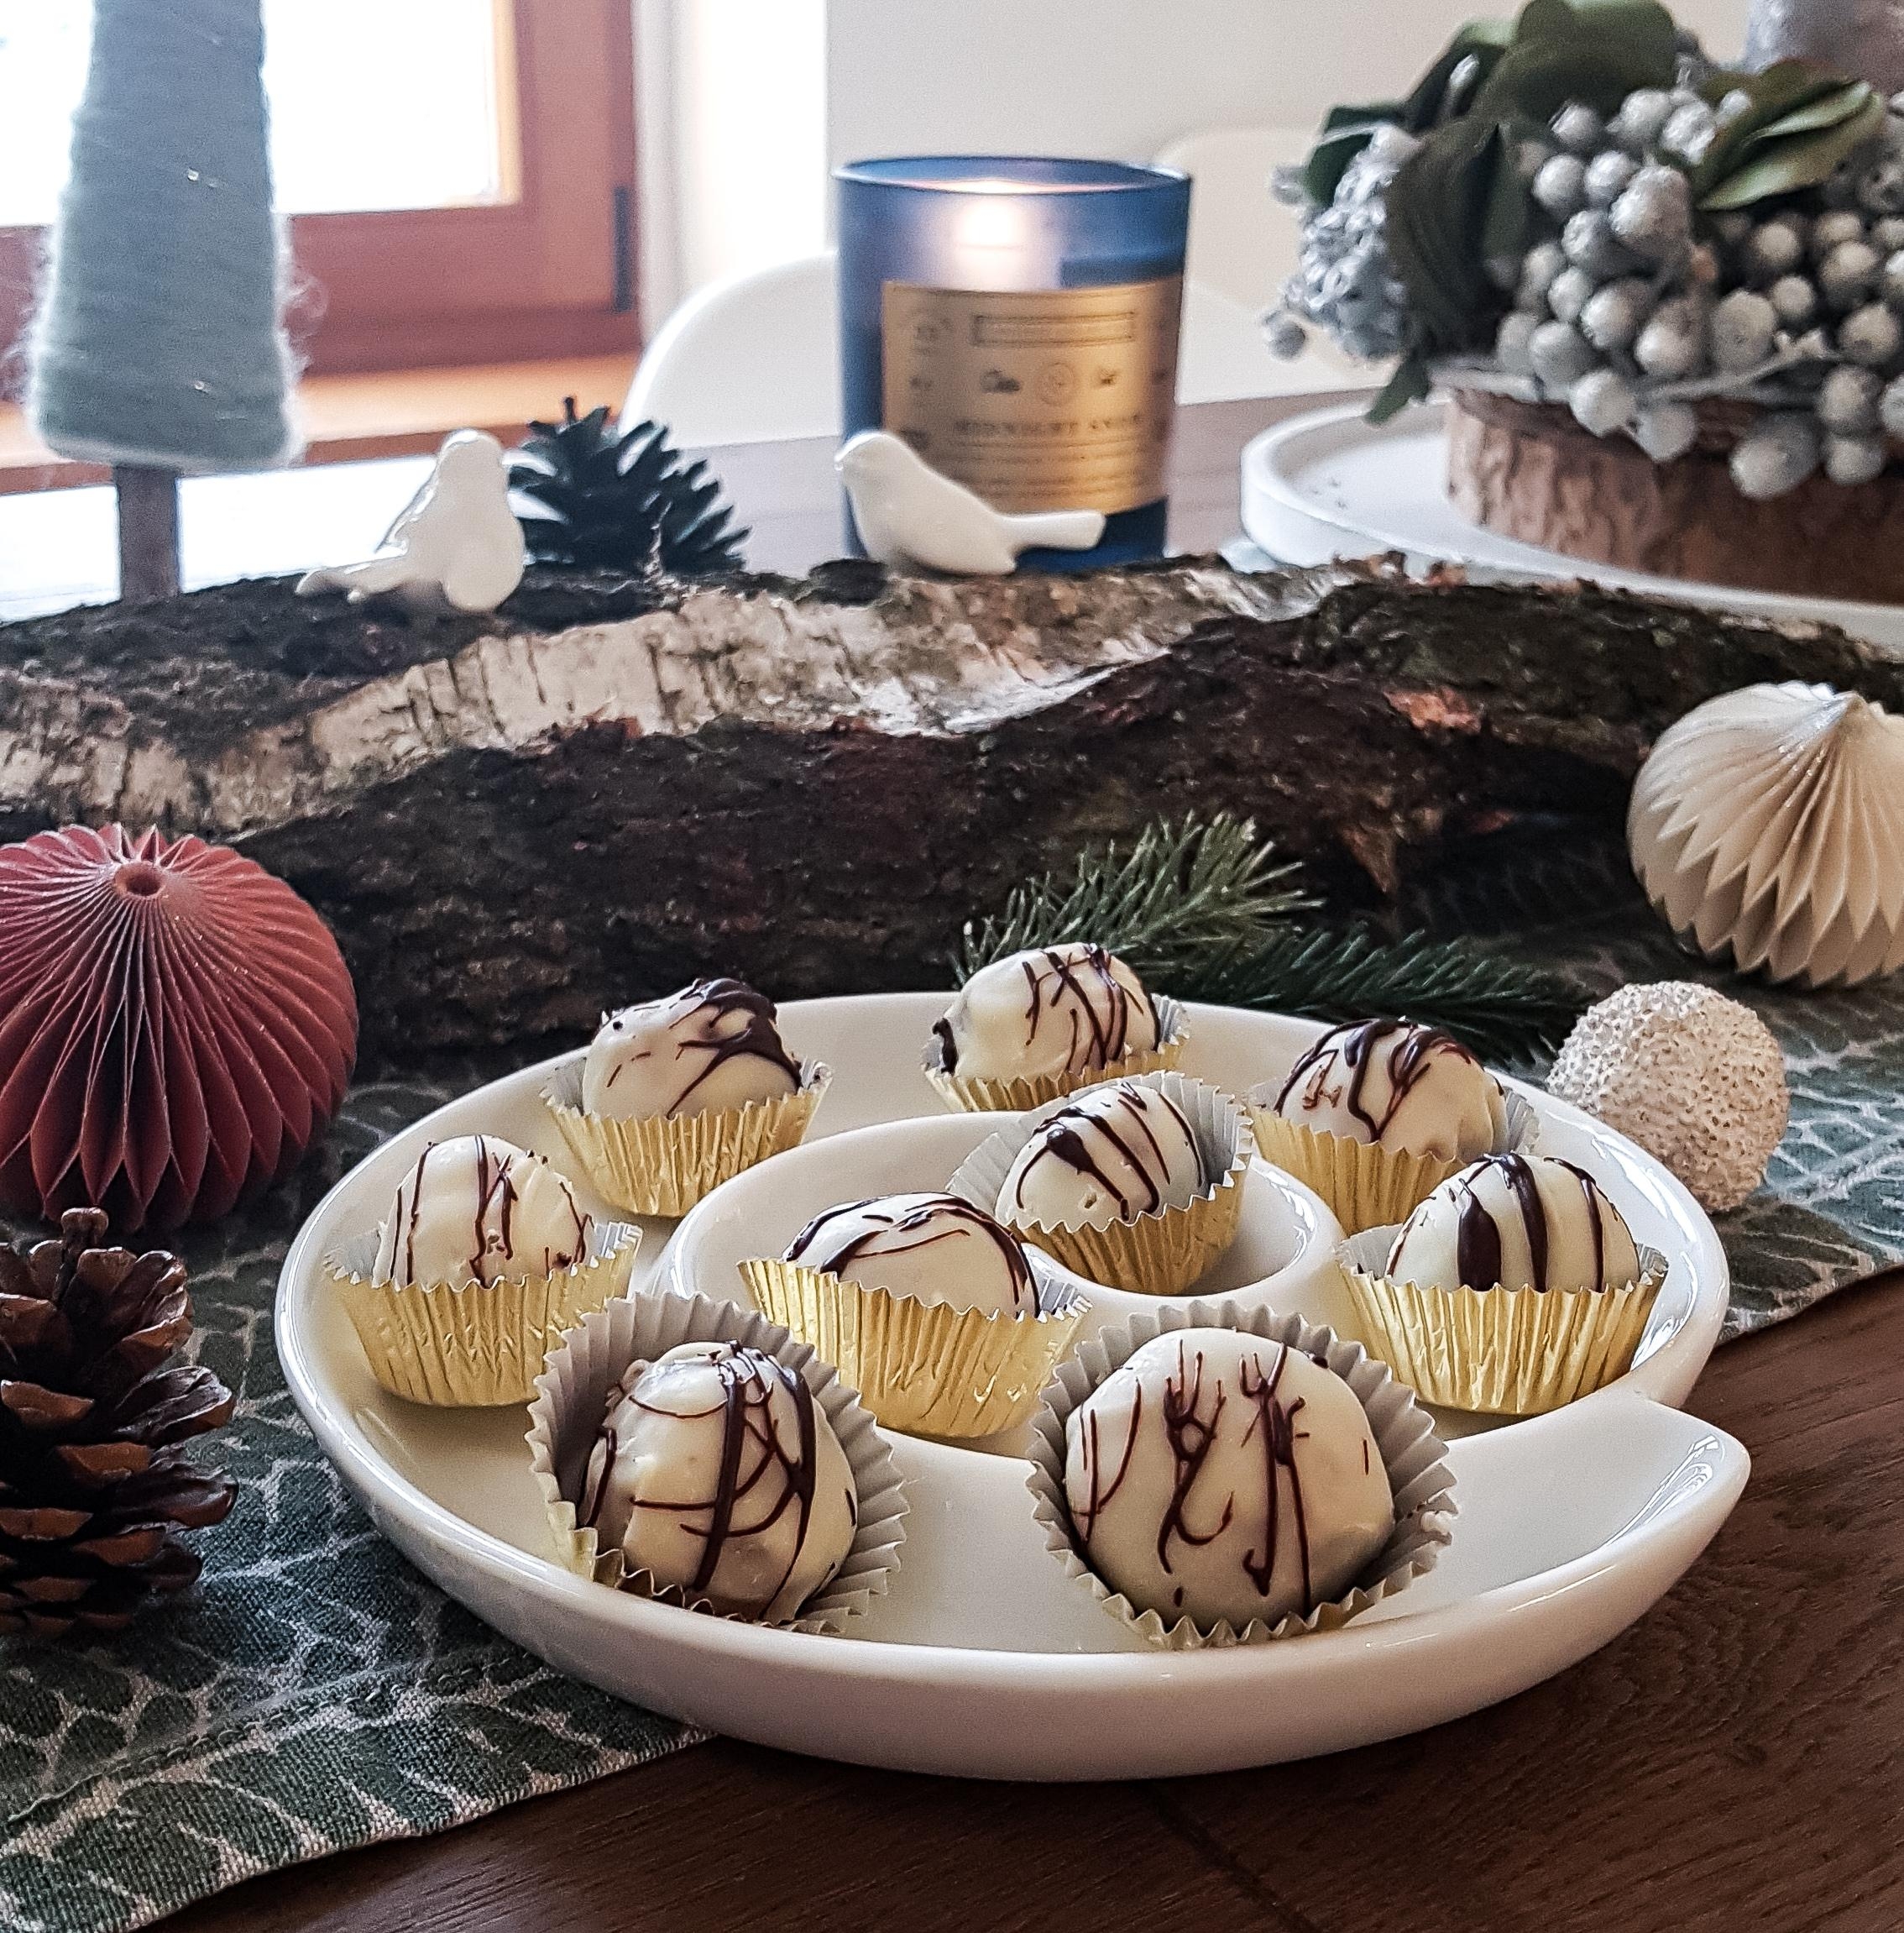 Selbstgemachte Schokoladen-Marzipan-Ganache-Pralinen. #zumverschenken #weihnachtlich #selfmade #homemade #cosy